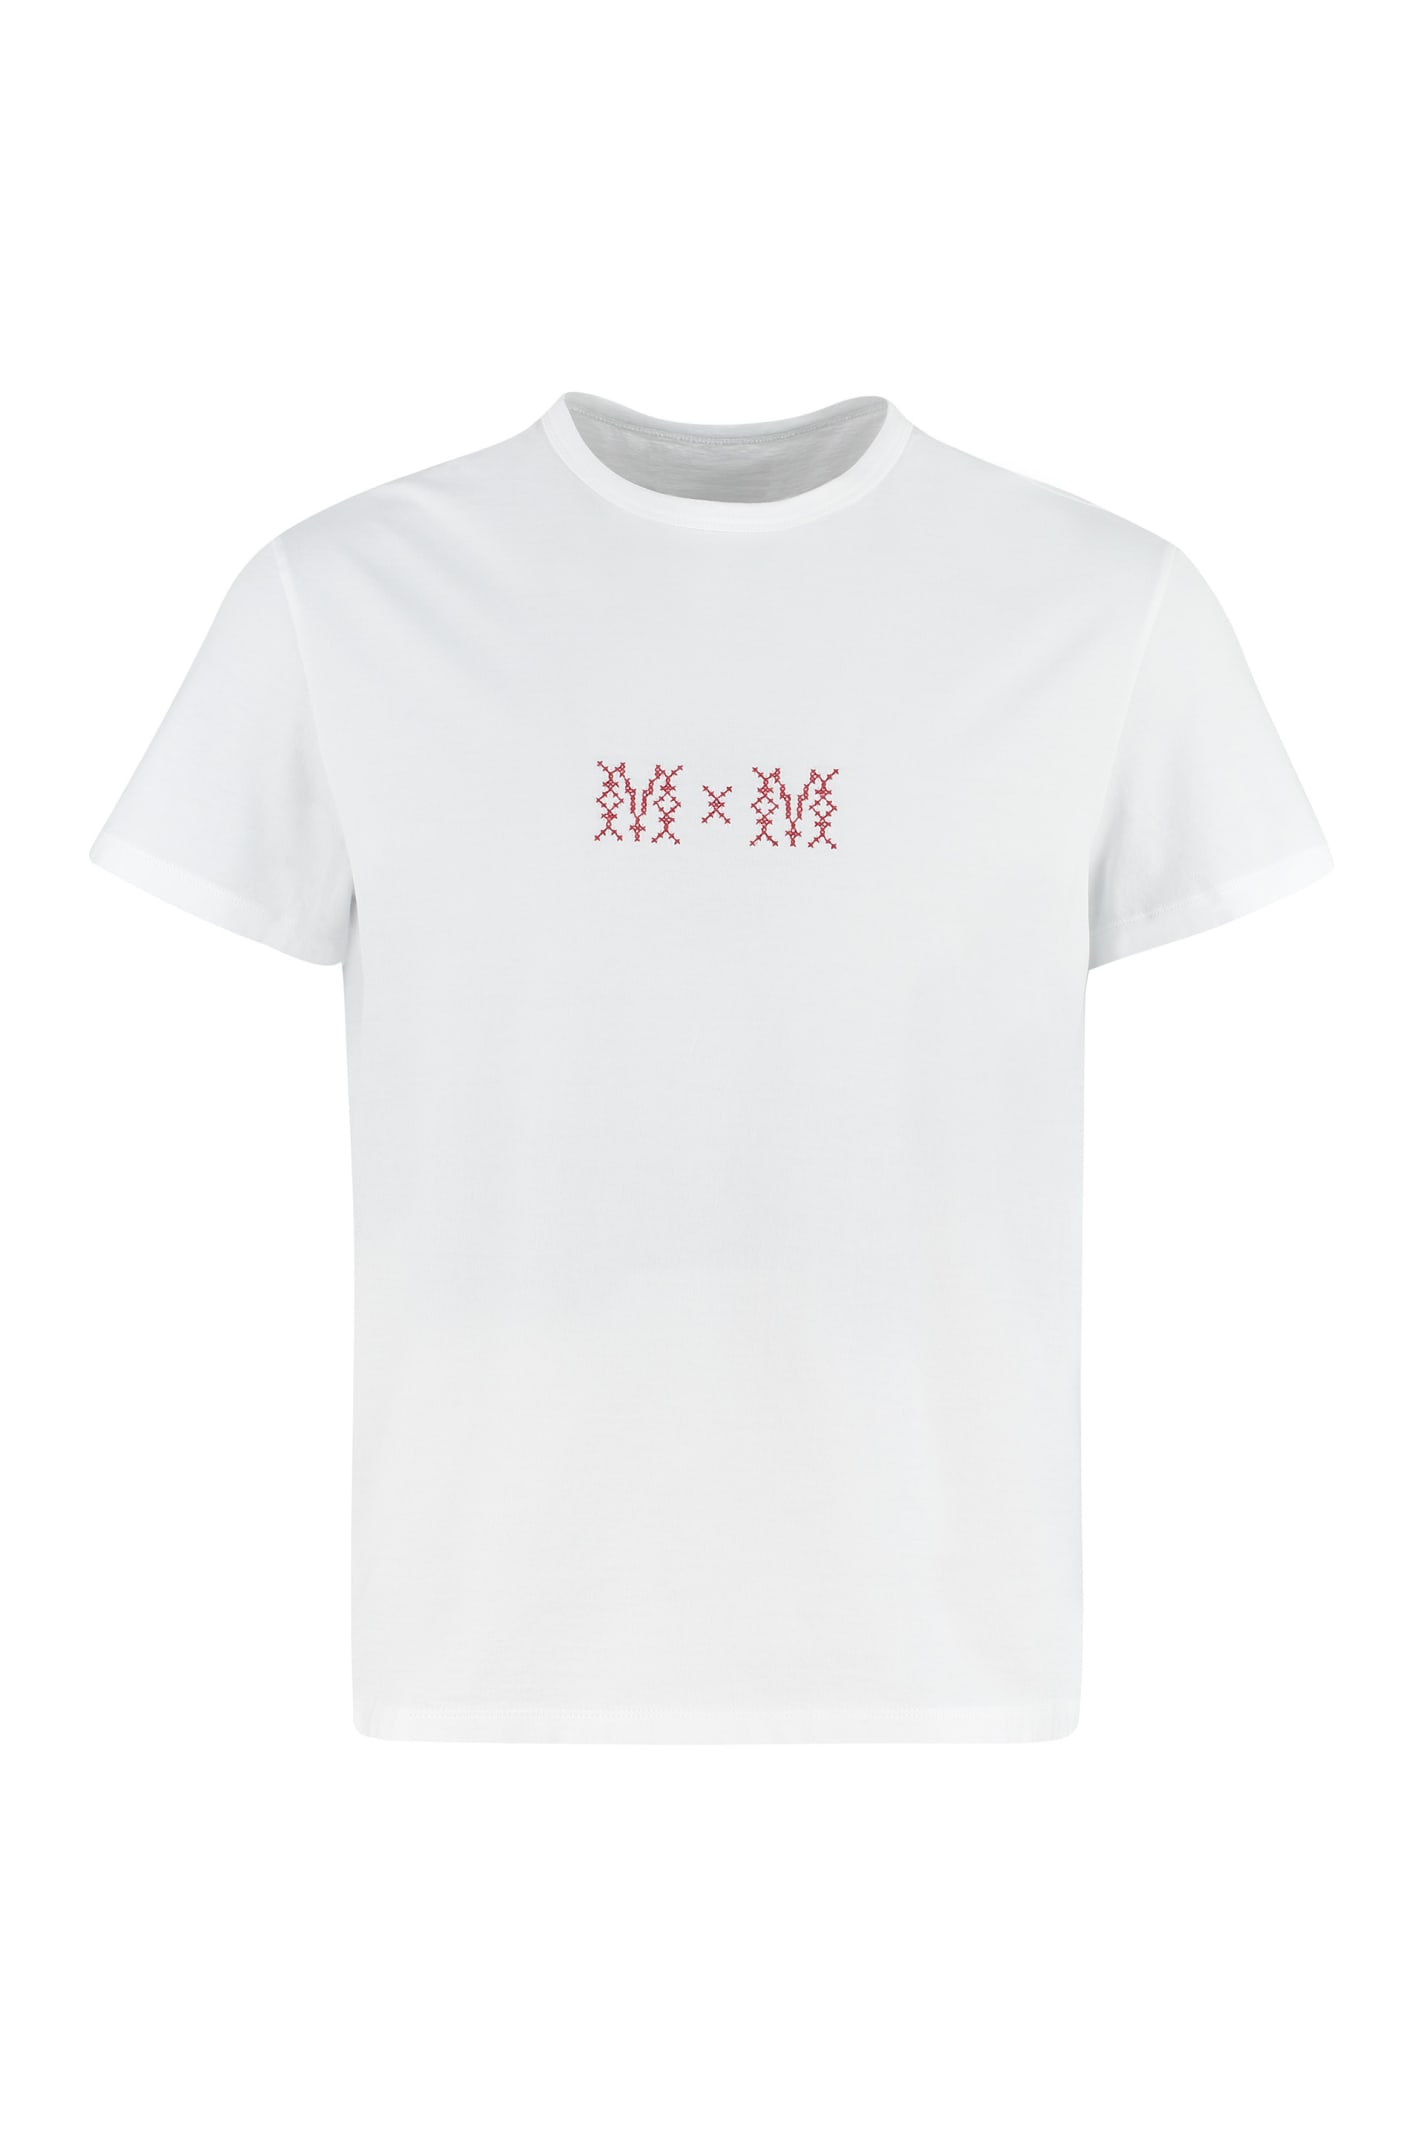 Maison Margiela Cotton Crew-neck T-shirt